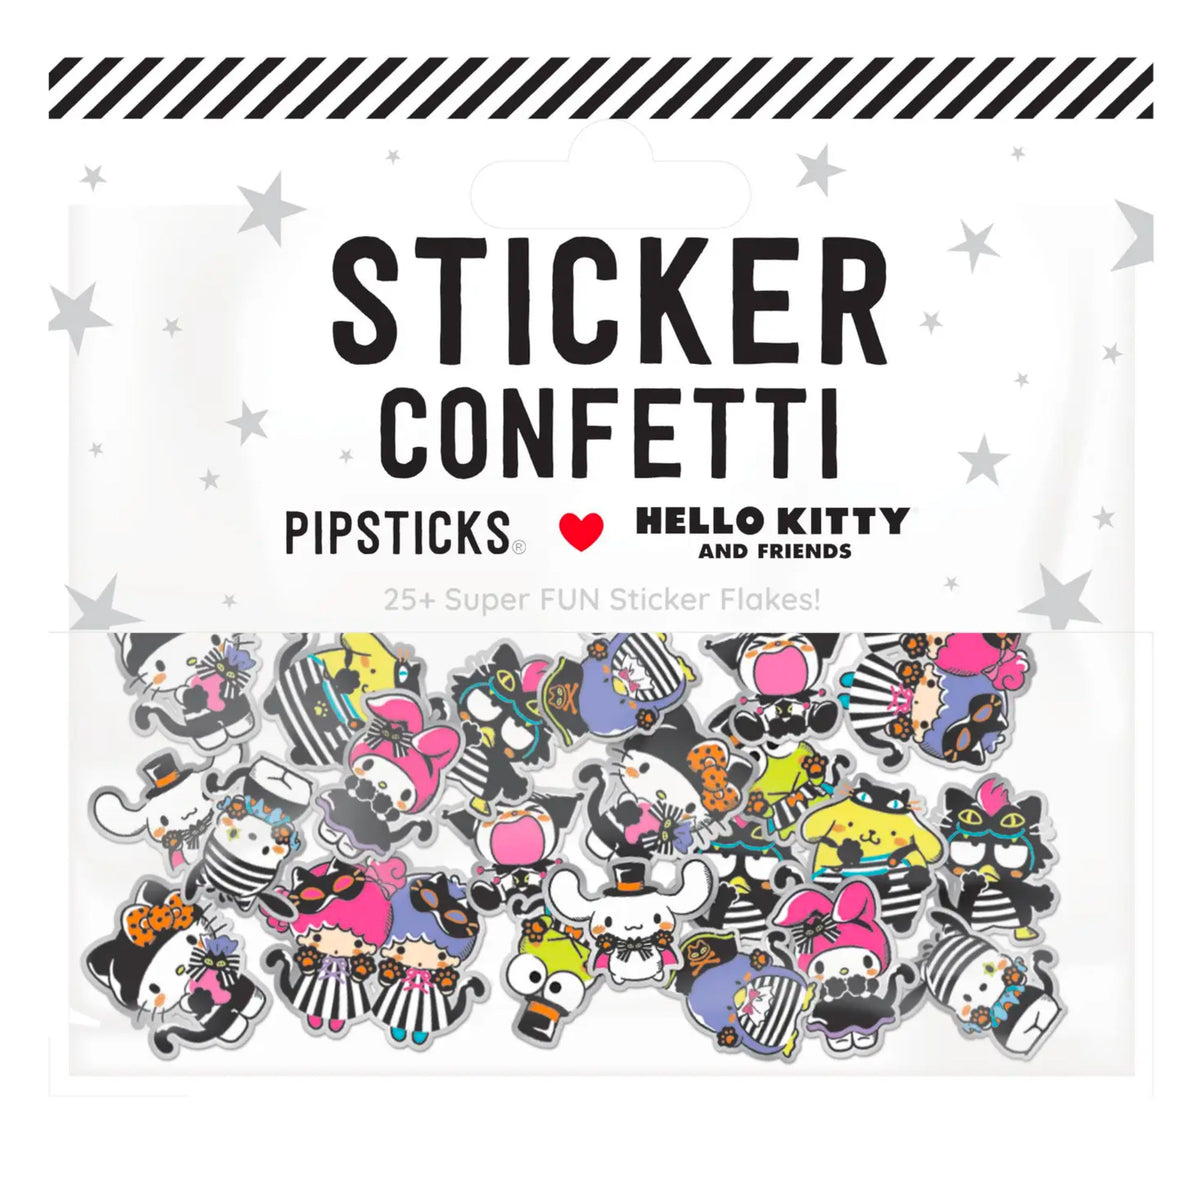 Hello Kitty And Friends Stripe A Pose Sticker Confetti